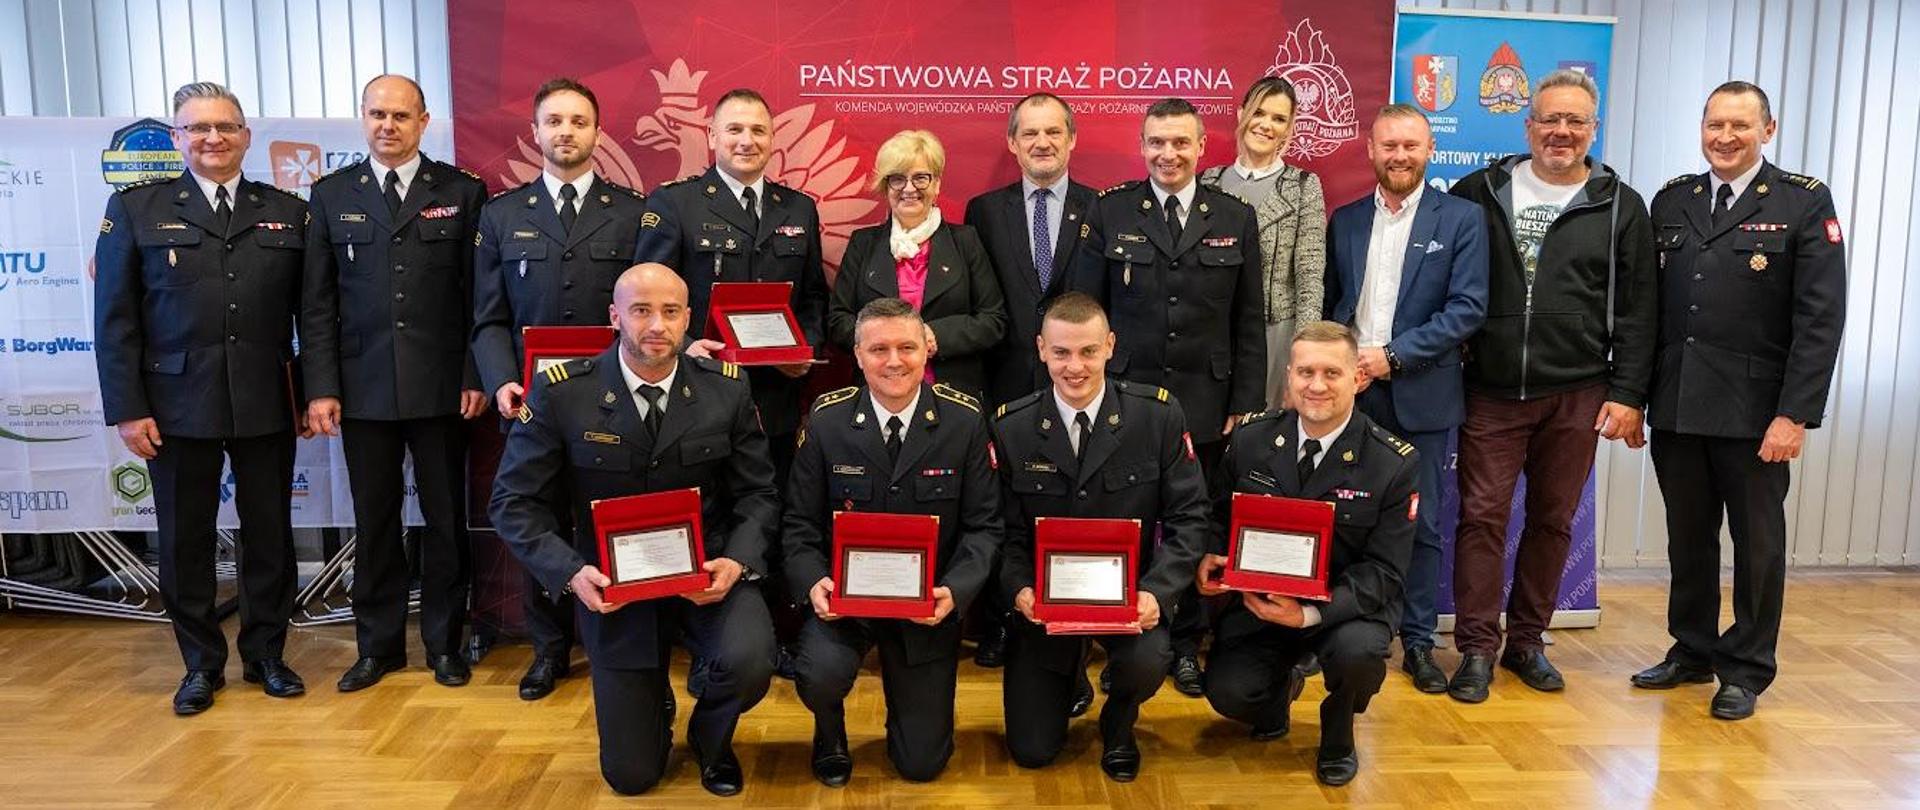 Zdjęcie zrobione w sali konferencyjnej Komendy Wojewódzkiej PSP w Rzeszowie podczas uroczystego spotkania ze strażakami sportowcami. Zdjęcie zbiorowe strażaków i zaproszonych gości.